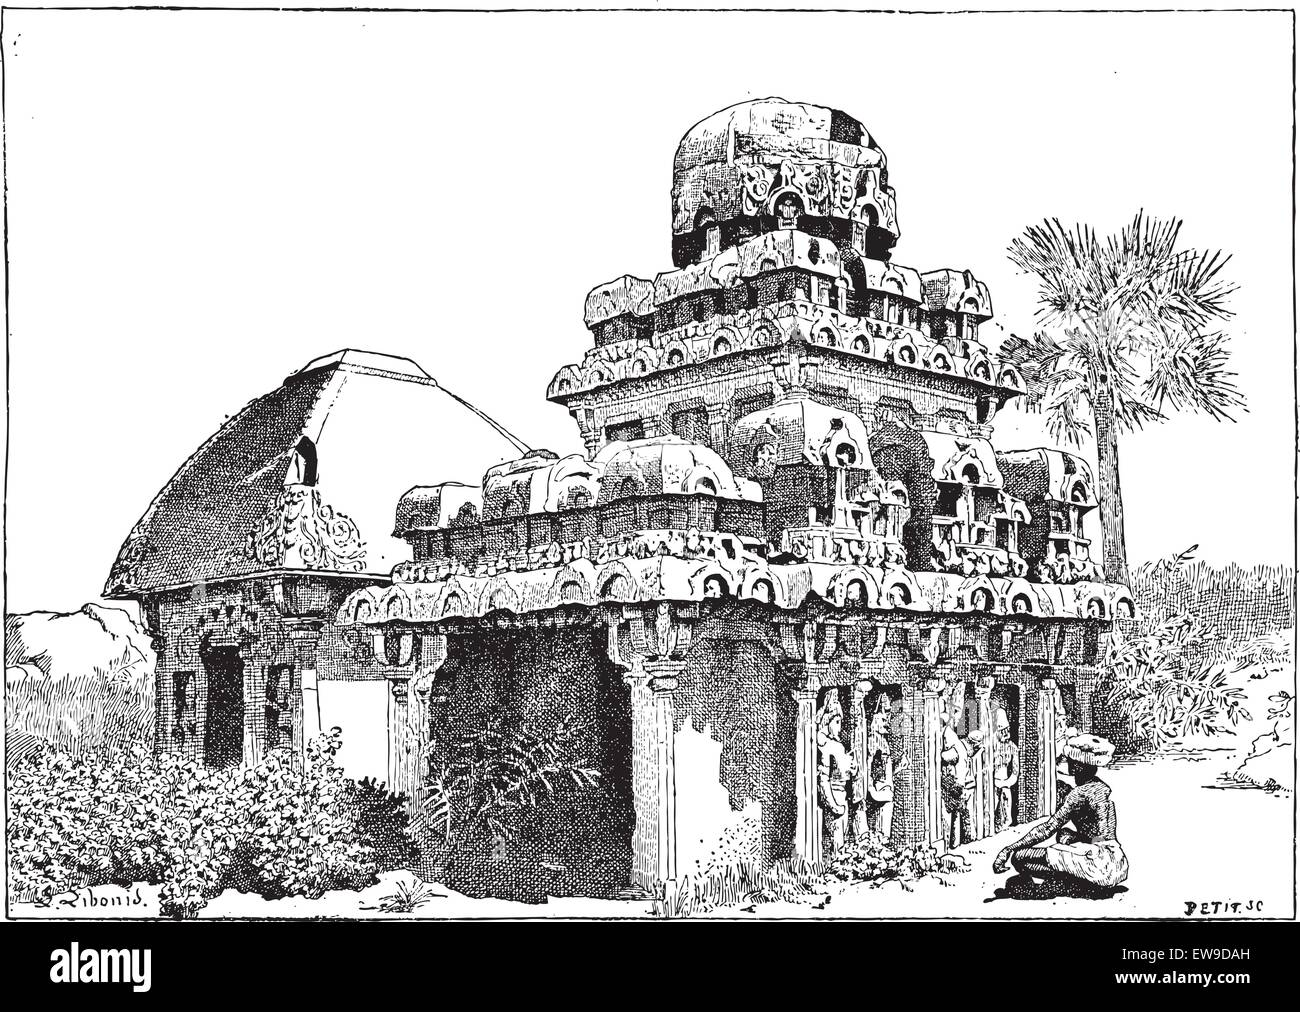 Mahabalipuram au Tamil Nadu, Inde, vintage engraved illustration. Dictionnaire des mots et des choses - Larive et Fleury - 1895 Illustration de Vecteur